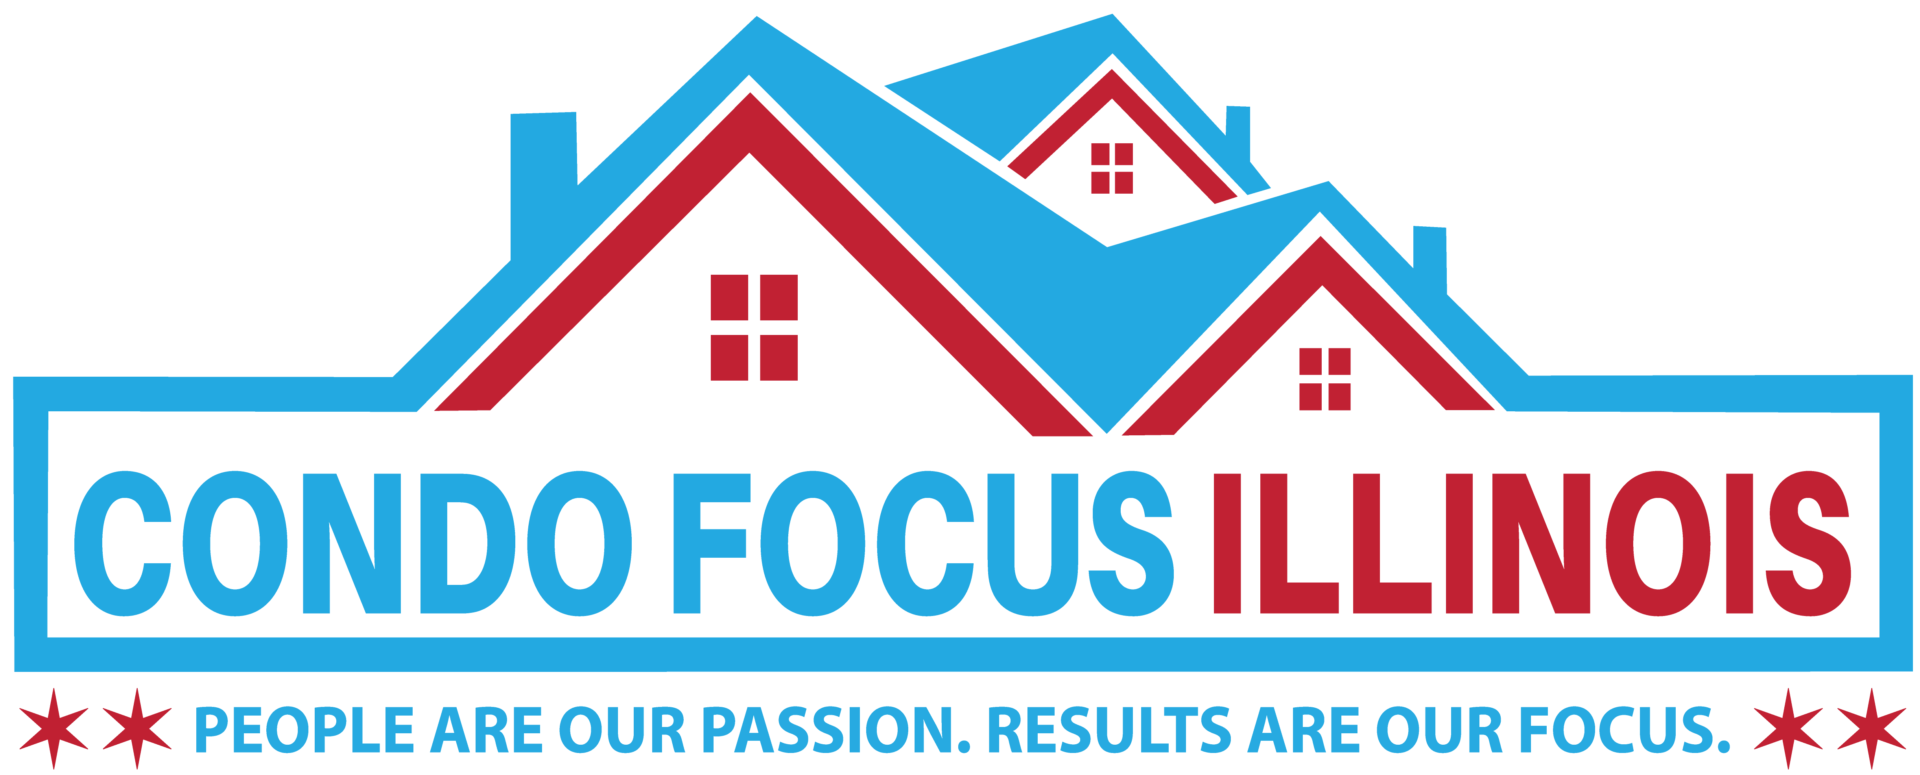 Condo Focus Illinois  logo